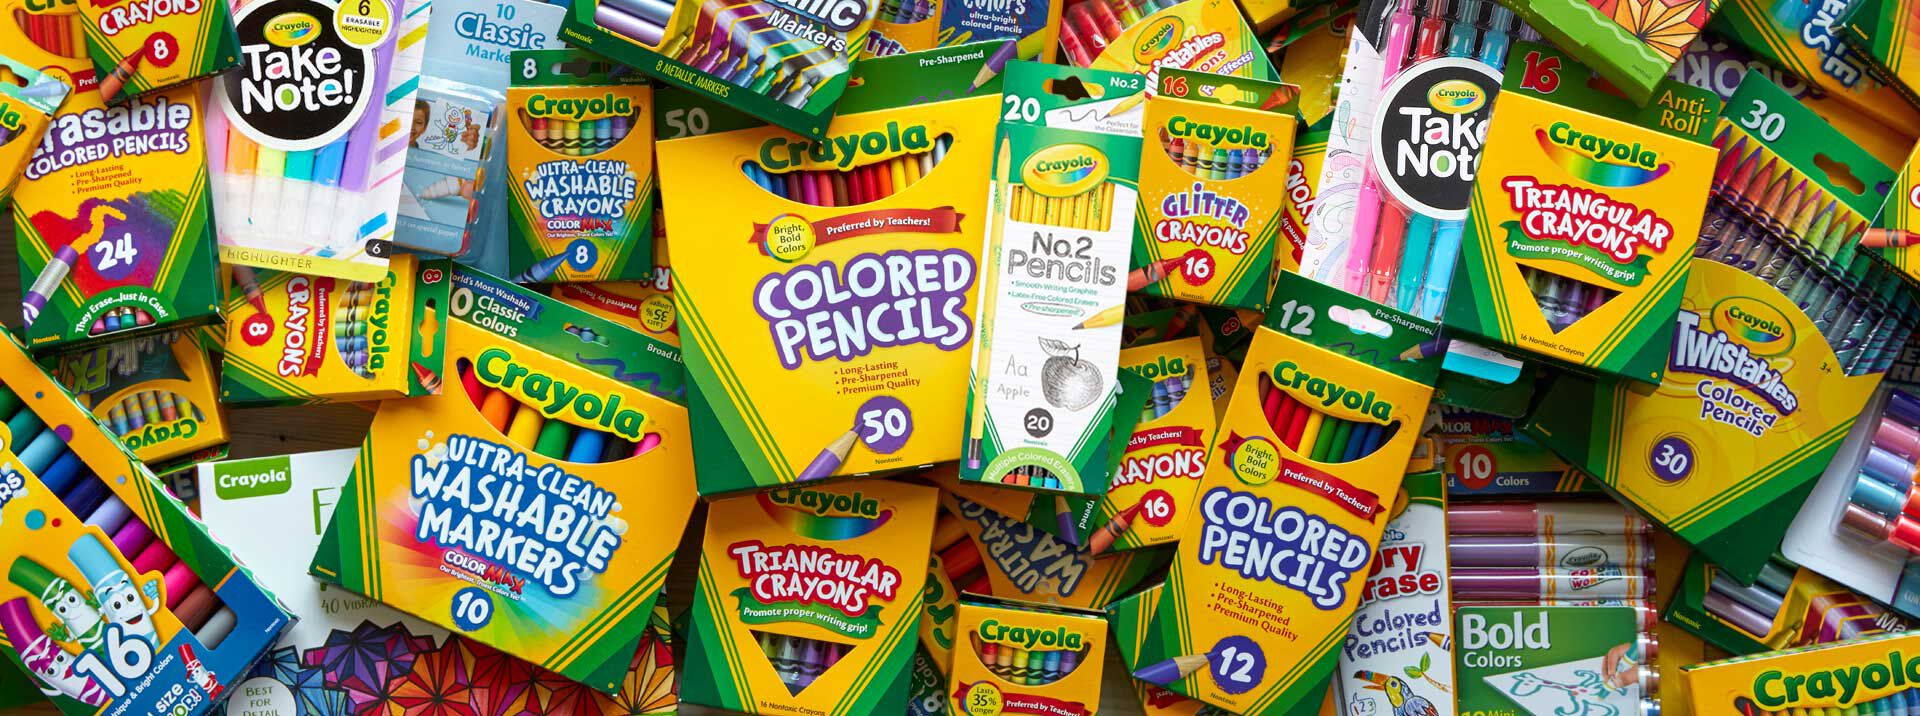 Crayola 70ct Sketch & Color Art Kit